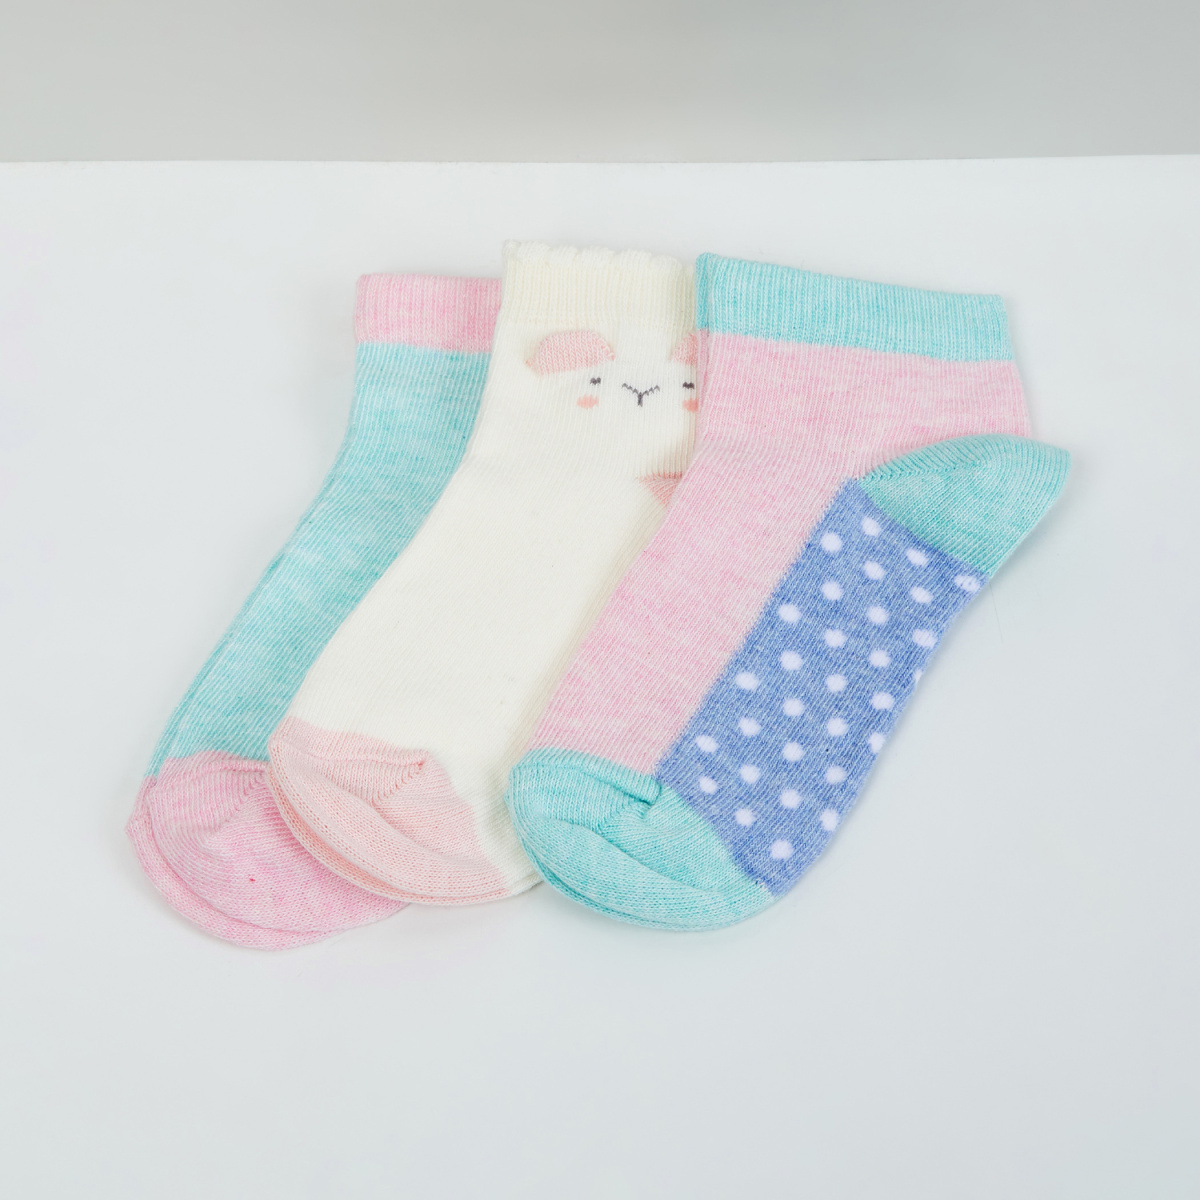 MAX Printed Socks - Set of 3 - 5-7 Yrs